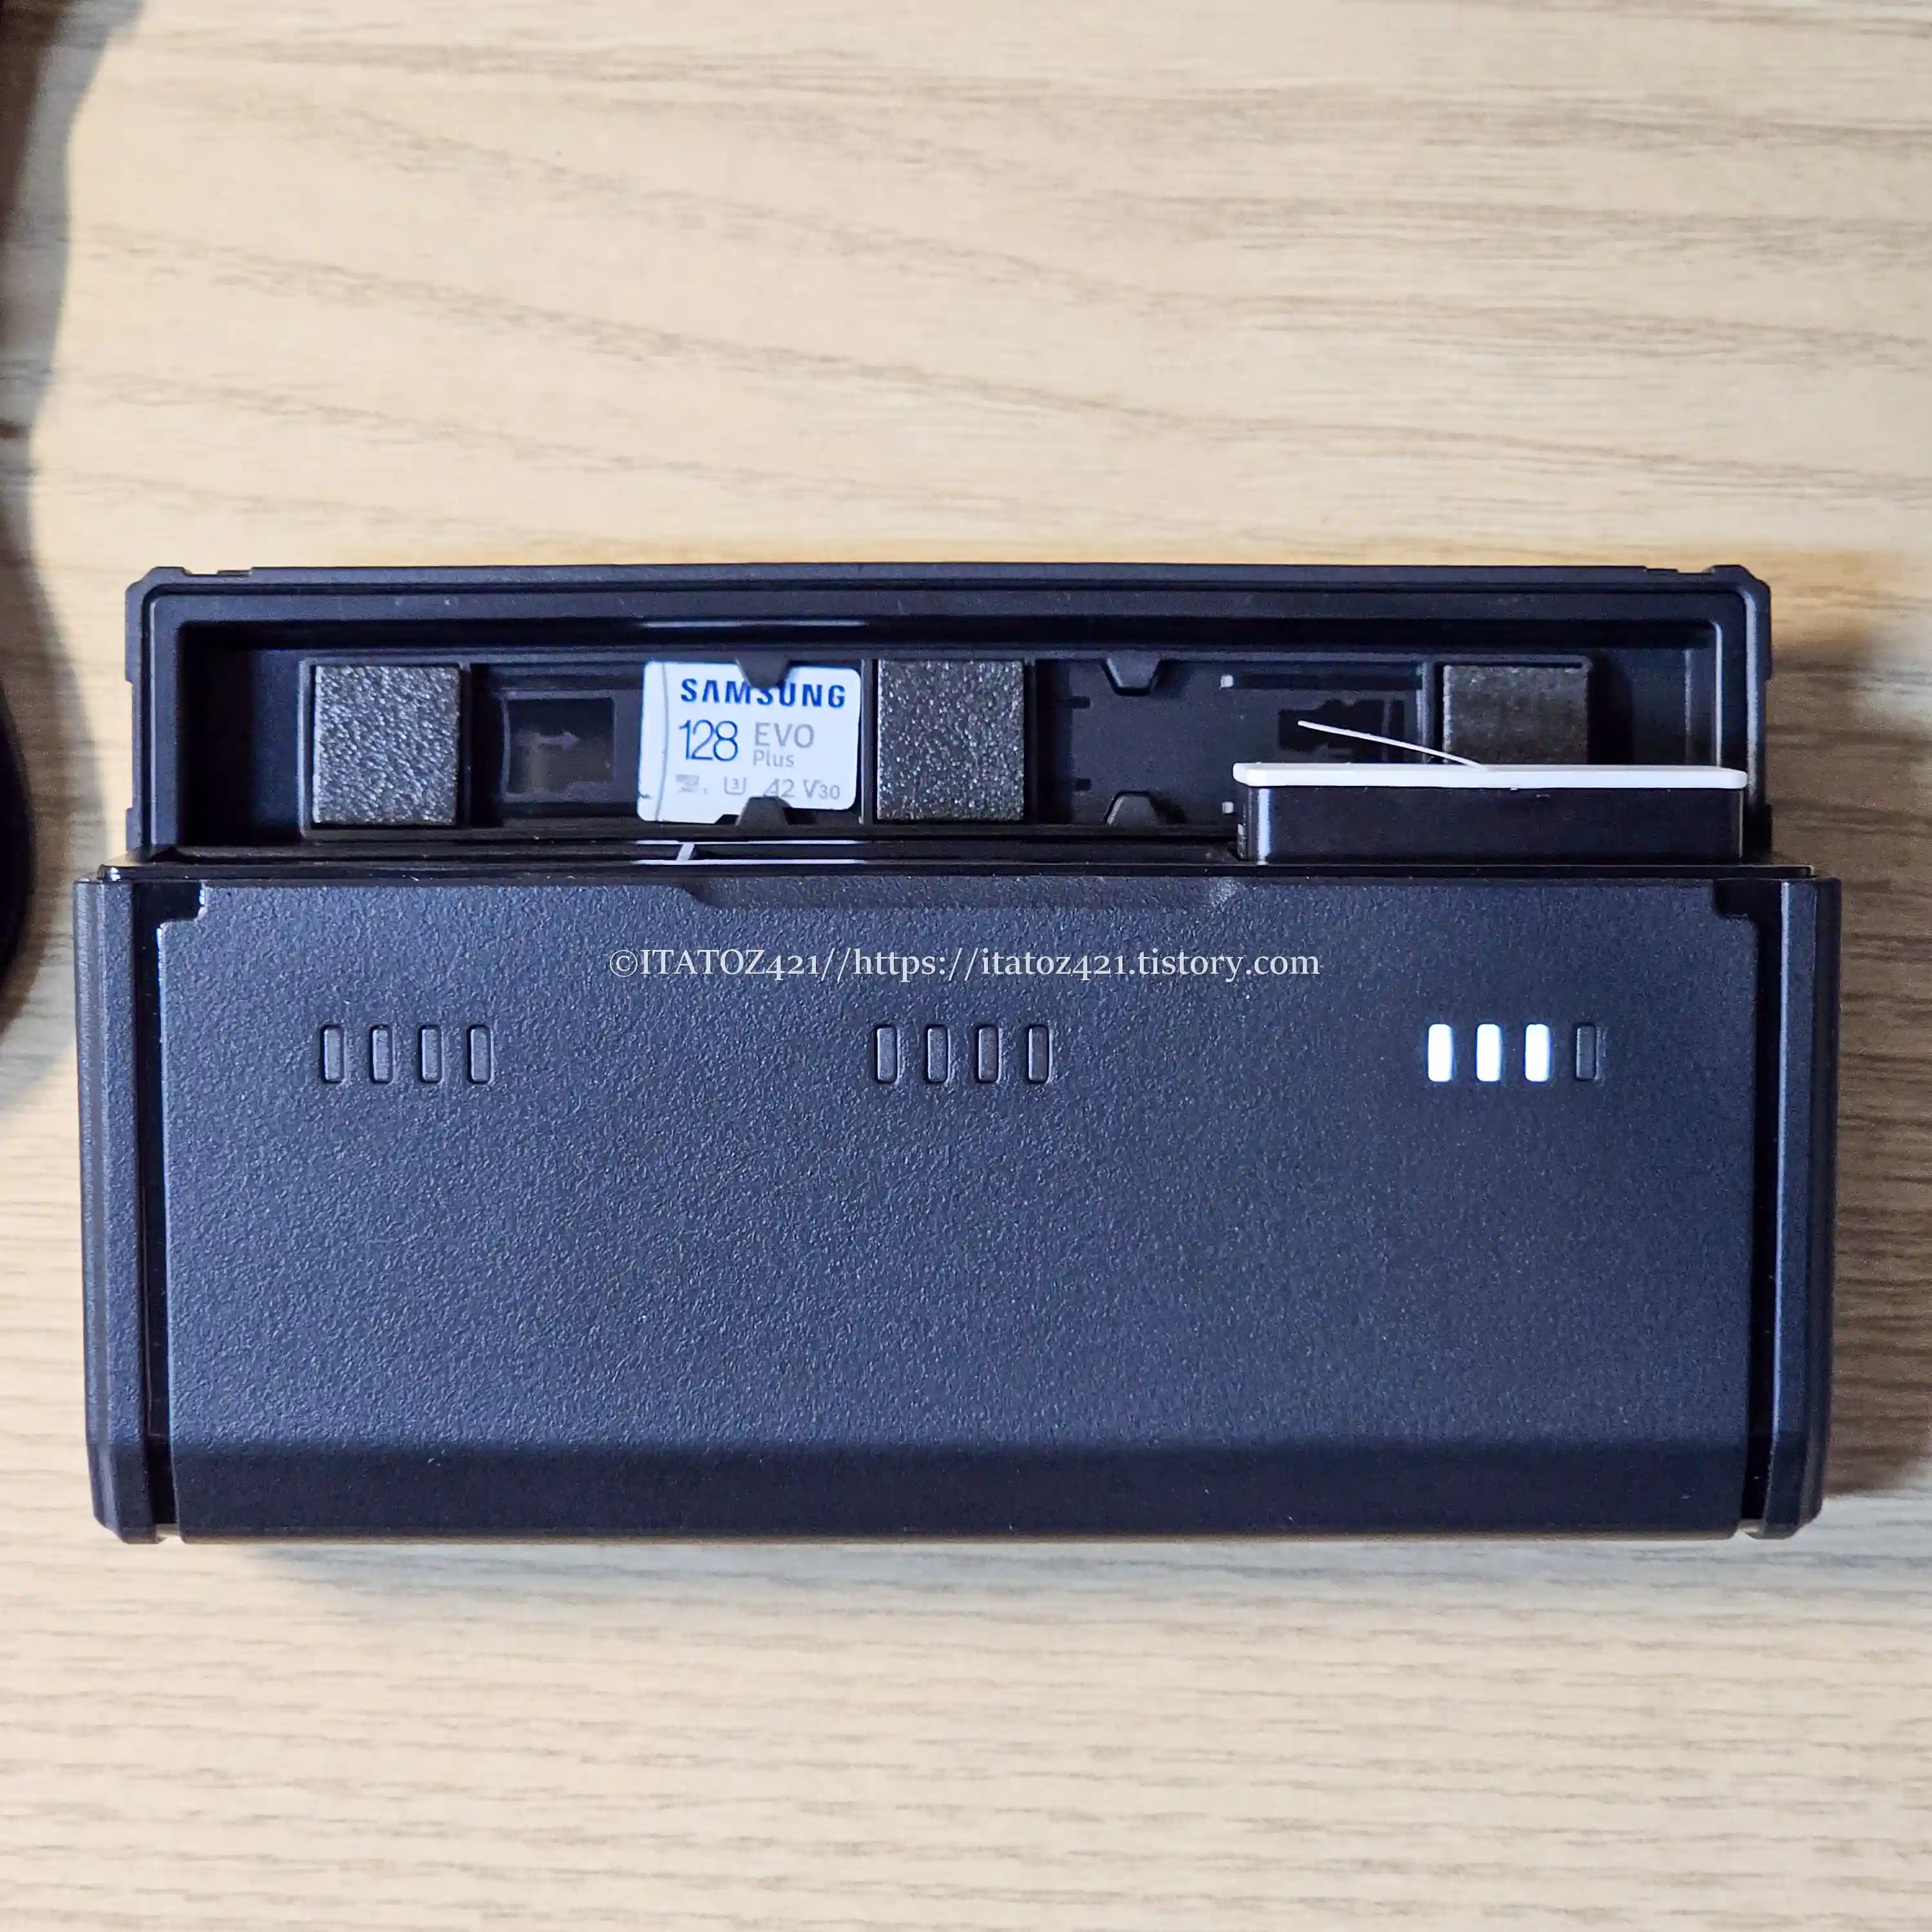 텔레신 고프로 멀티 충전기 케이스는 뚜껑 상단 SD카드 보관 슬롯 2개 배터리 충전 슬로 3개가 있으며 뚜꼉을 열었을 때 전면에 있는 LED 인디케이터로 잔량을 확인할 수 있다.